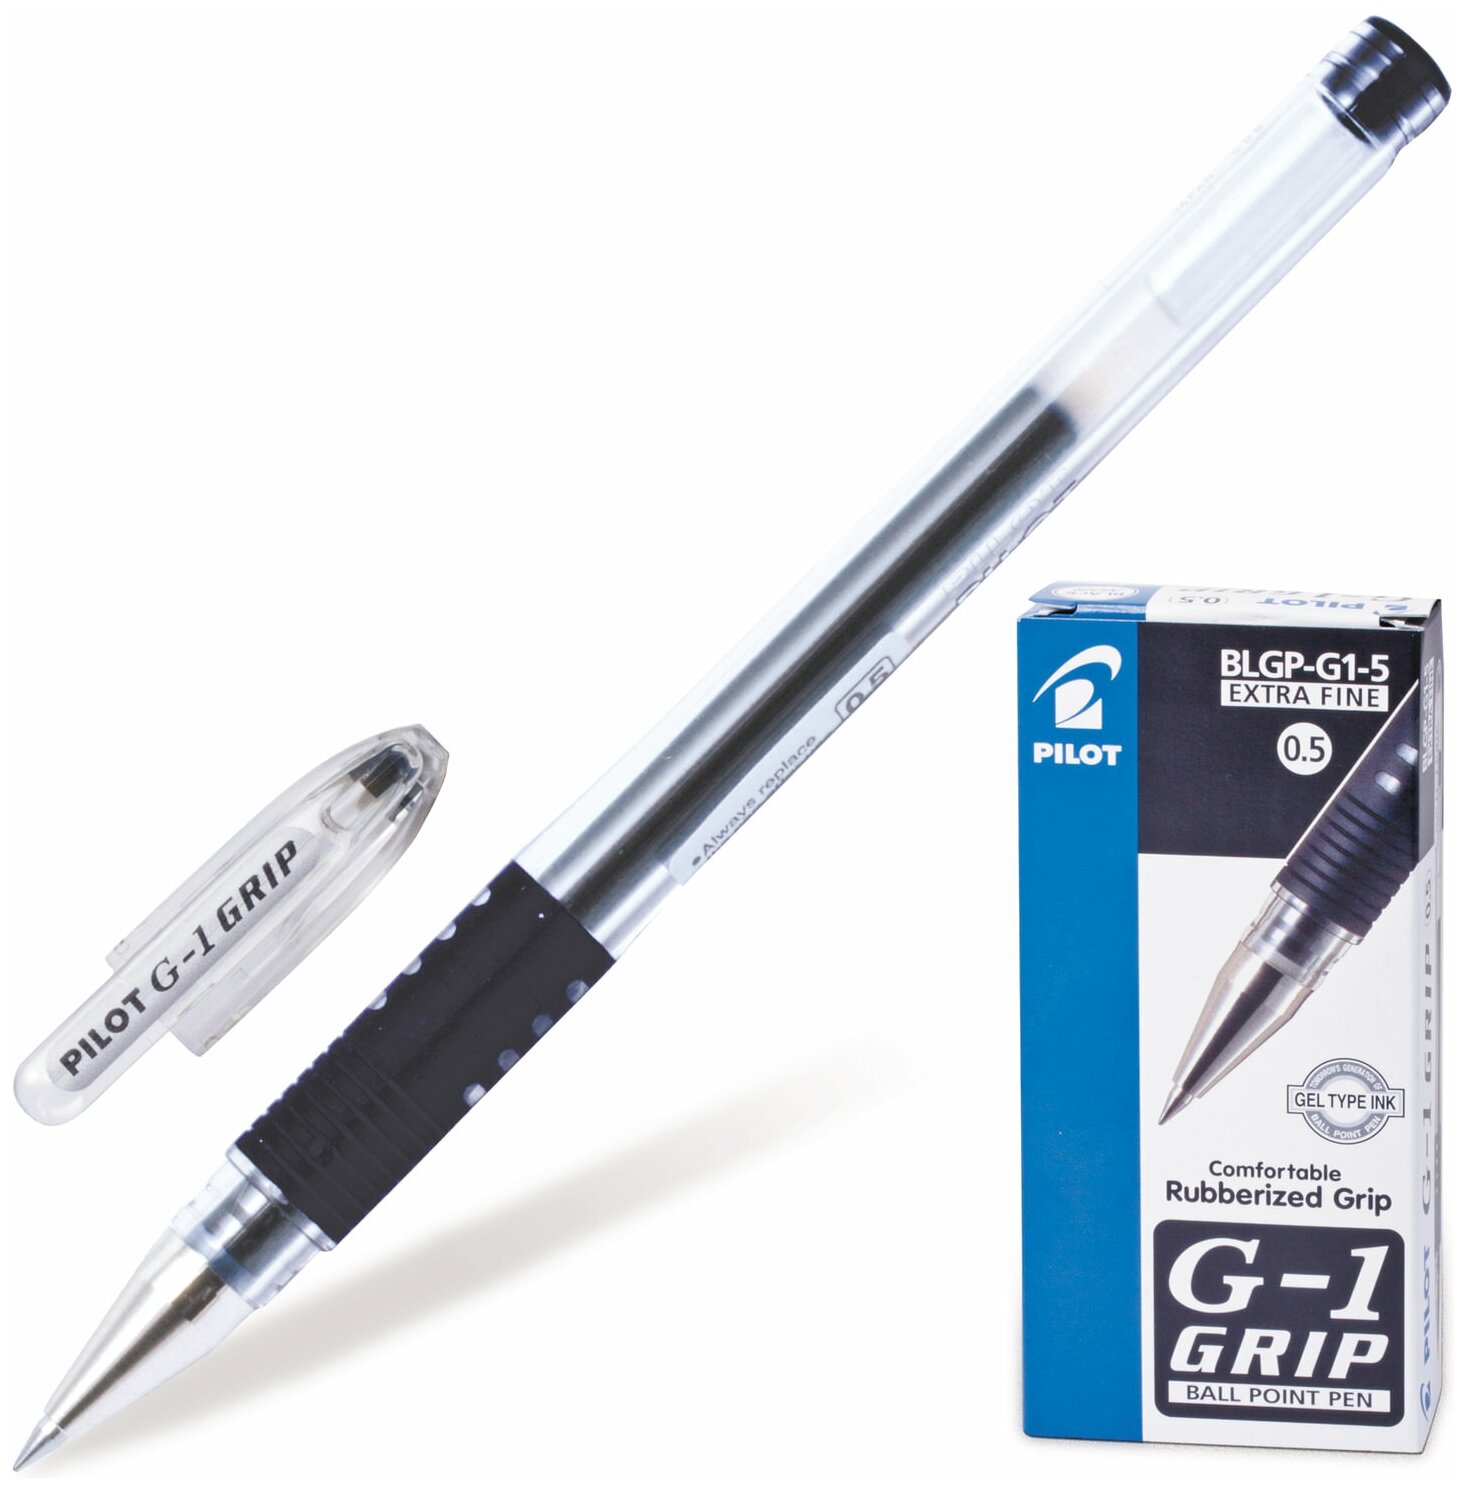 Ручка гелевая с грипом PILOT G-1 Grip, черная, корпус прозрачный, 0,5мм, линия 0,3мм, BLGP-G1-5